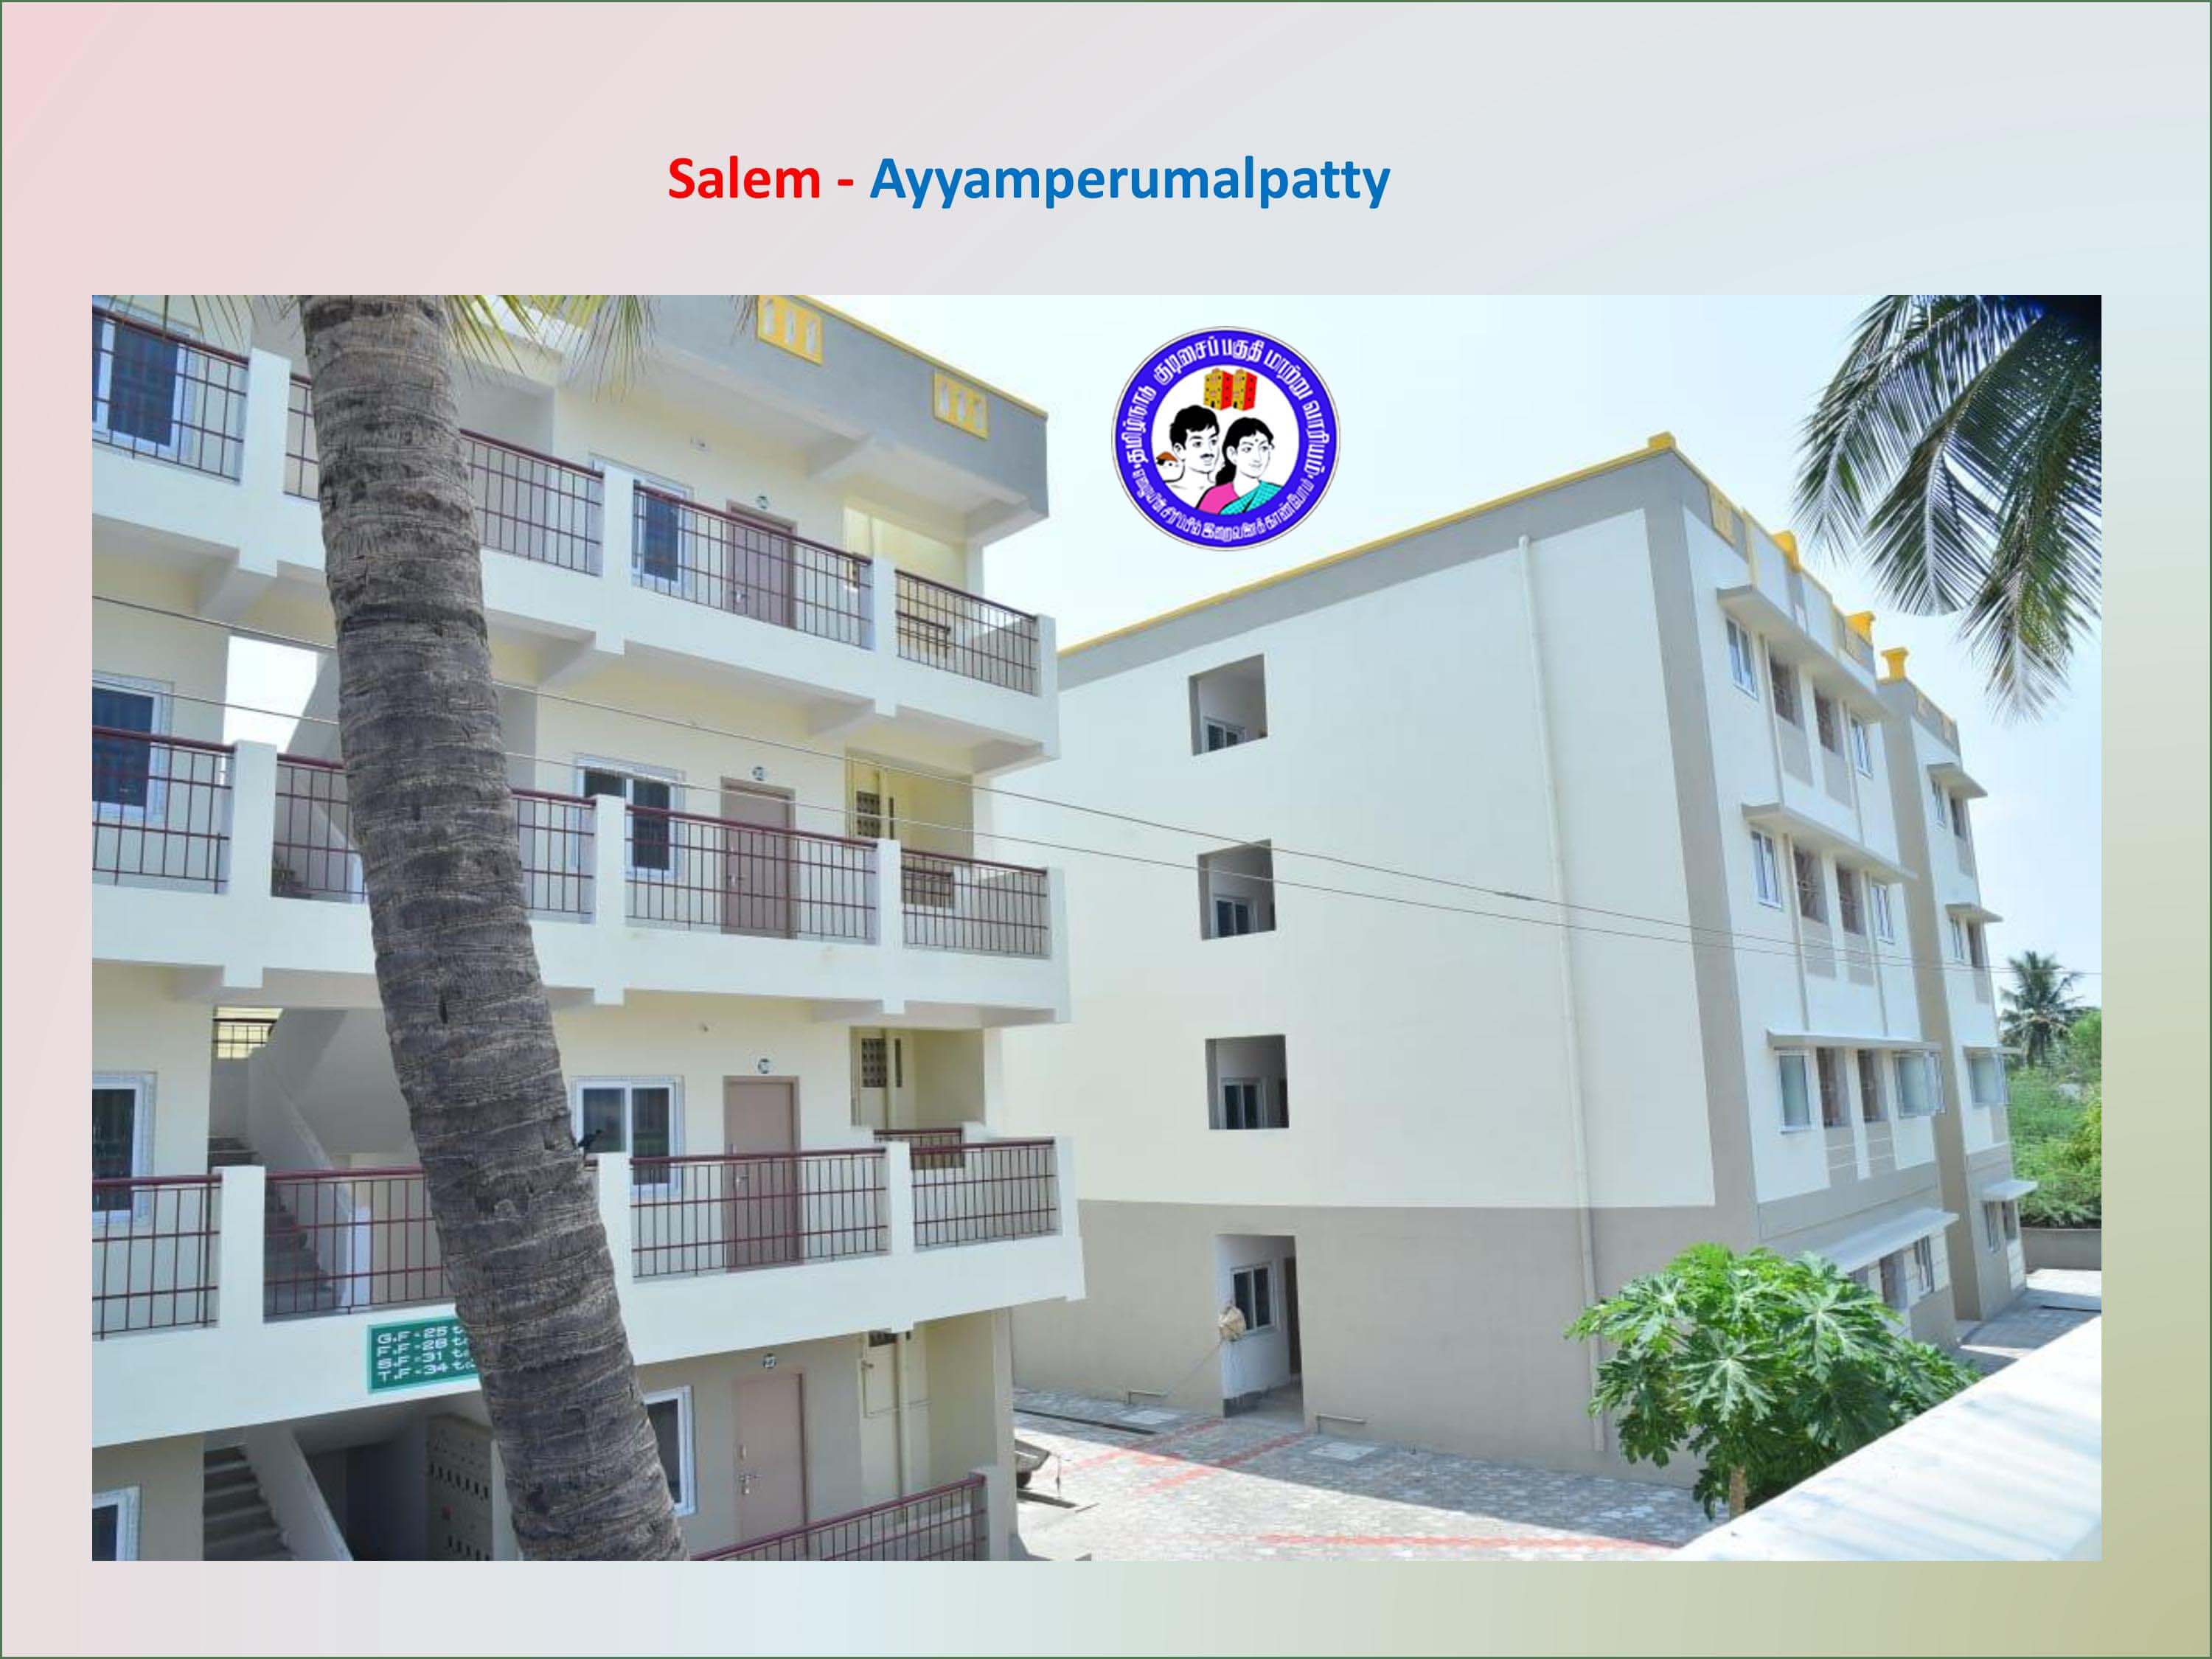 Salem - Ayyamperumalpatty